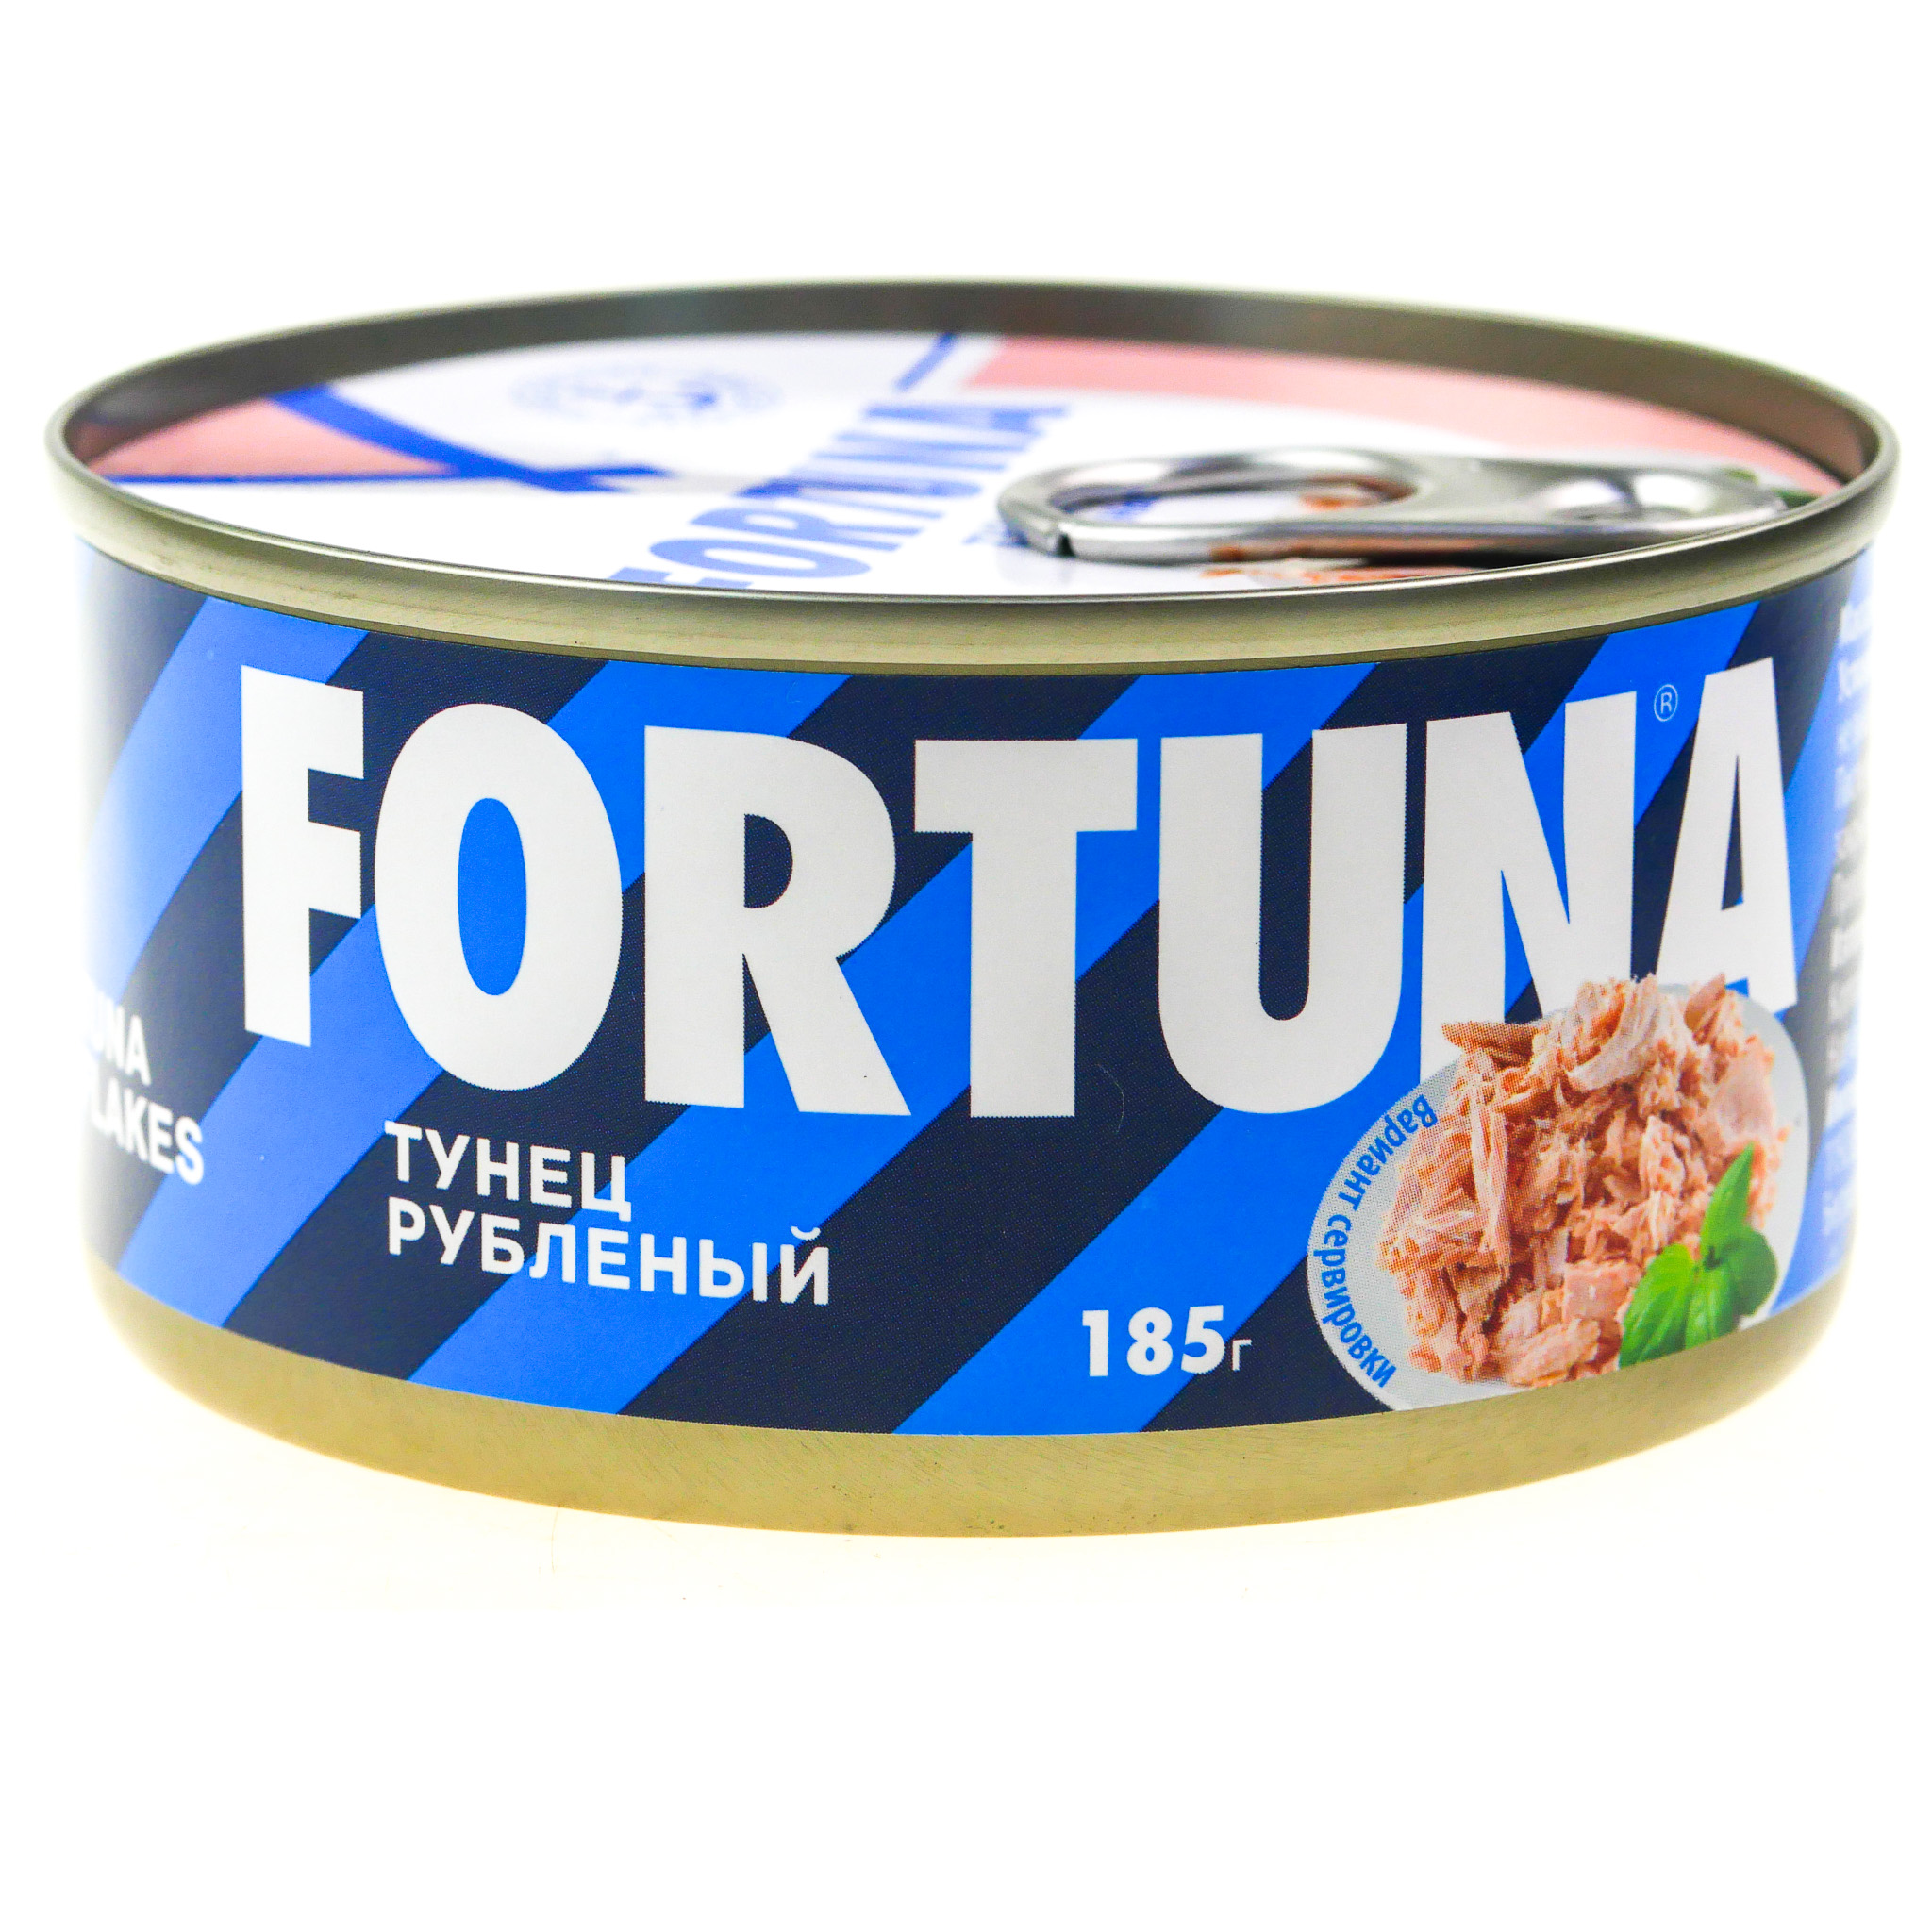 Рубленный тунец. Fortuna тунец рубленый. Тунец Фортуна 185г рубленый ж/б. Fortuna тунец рубленый в собственном соку 185г ж/б. Фортуна тунец в томатном соусе.